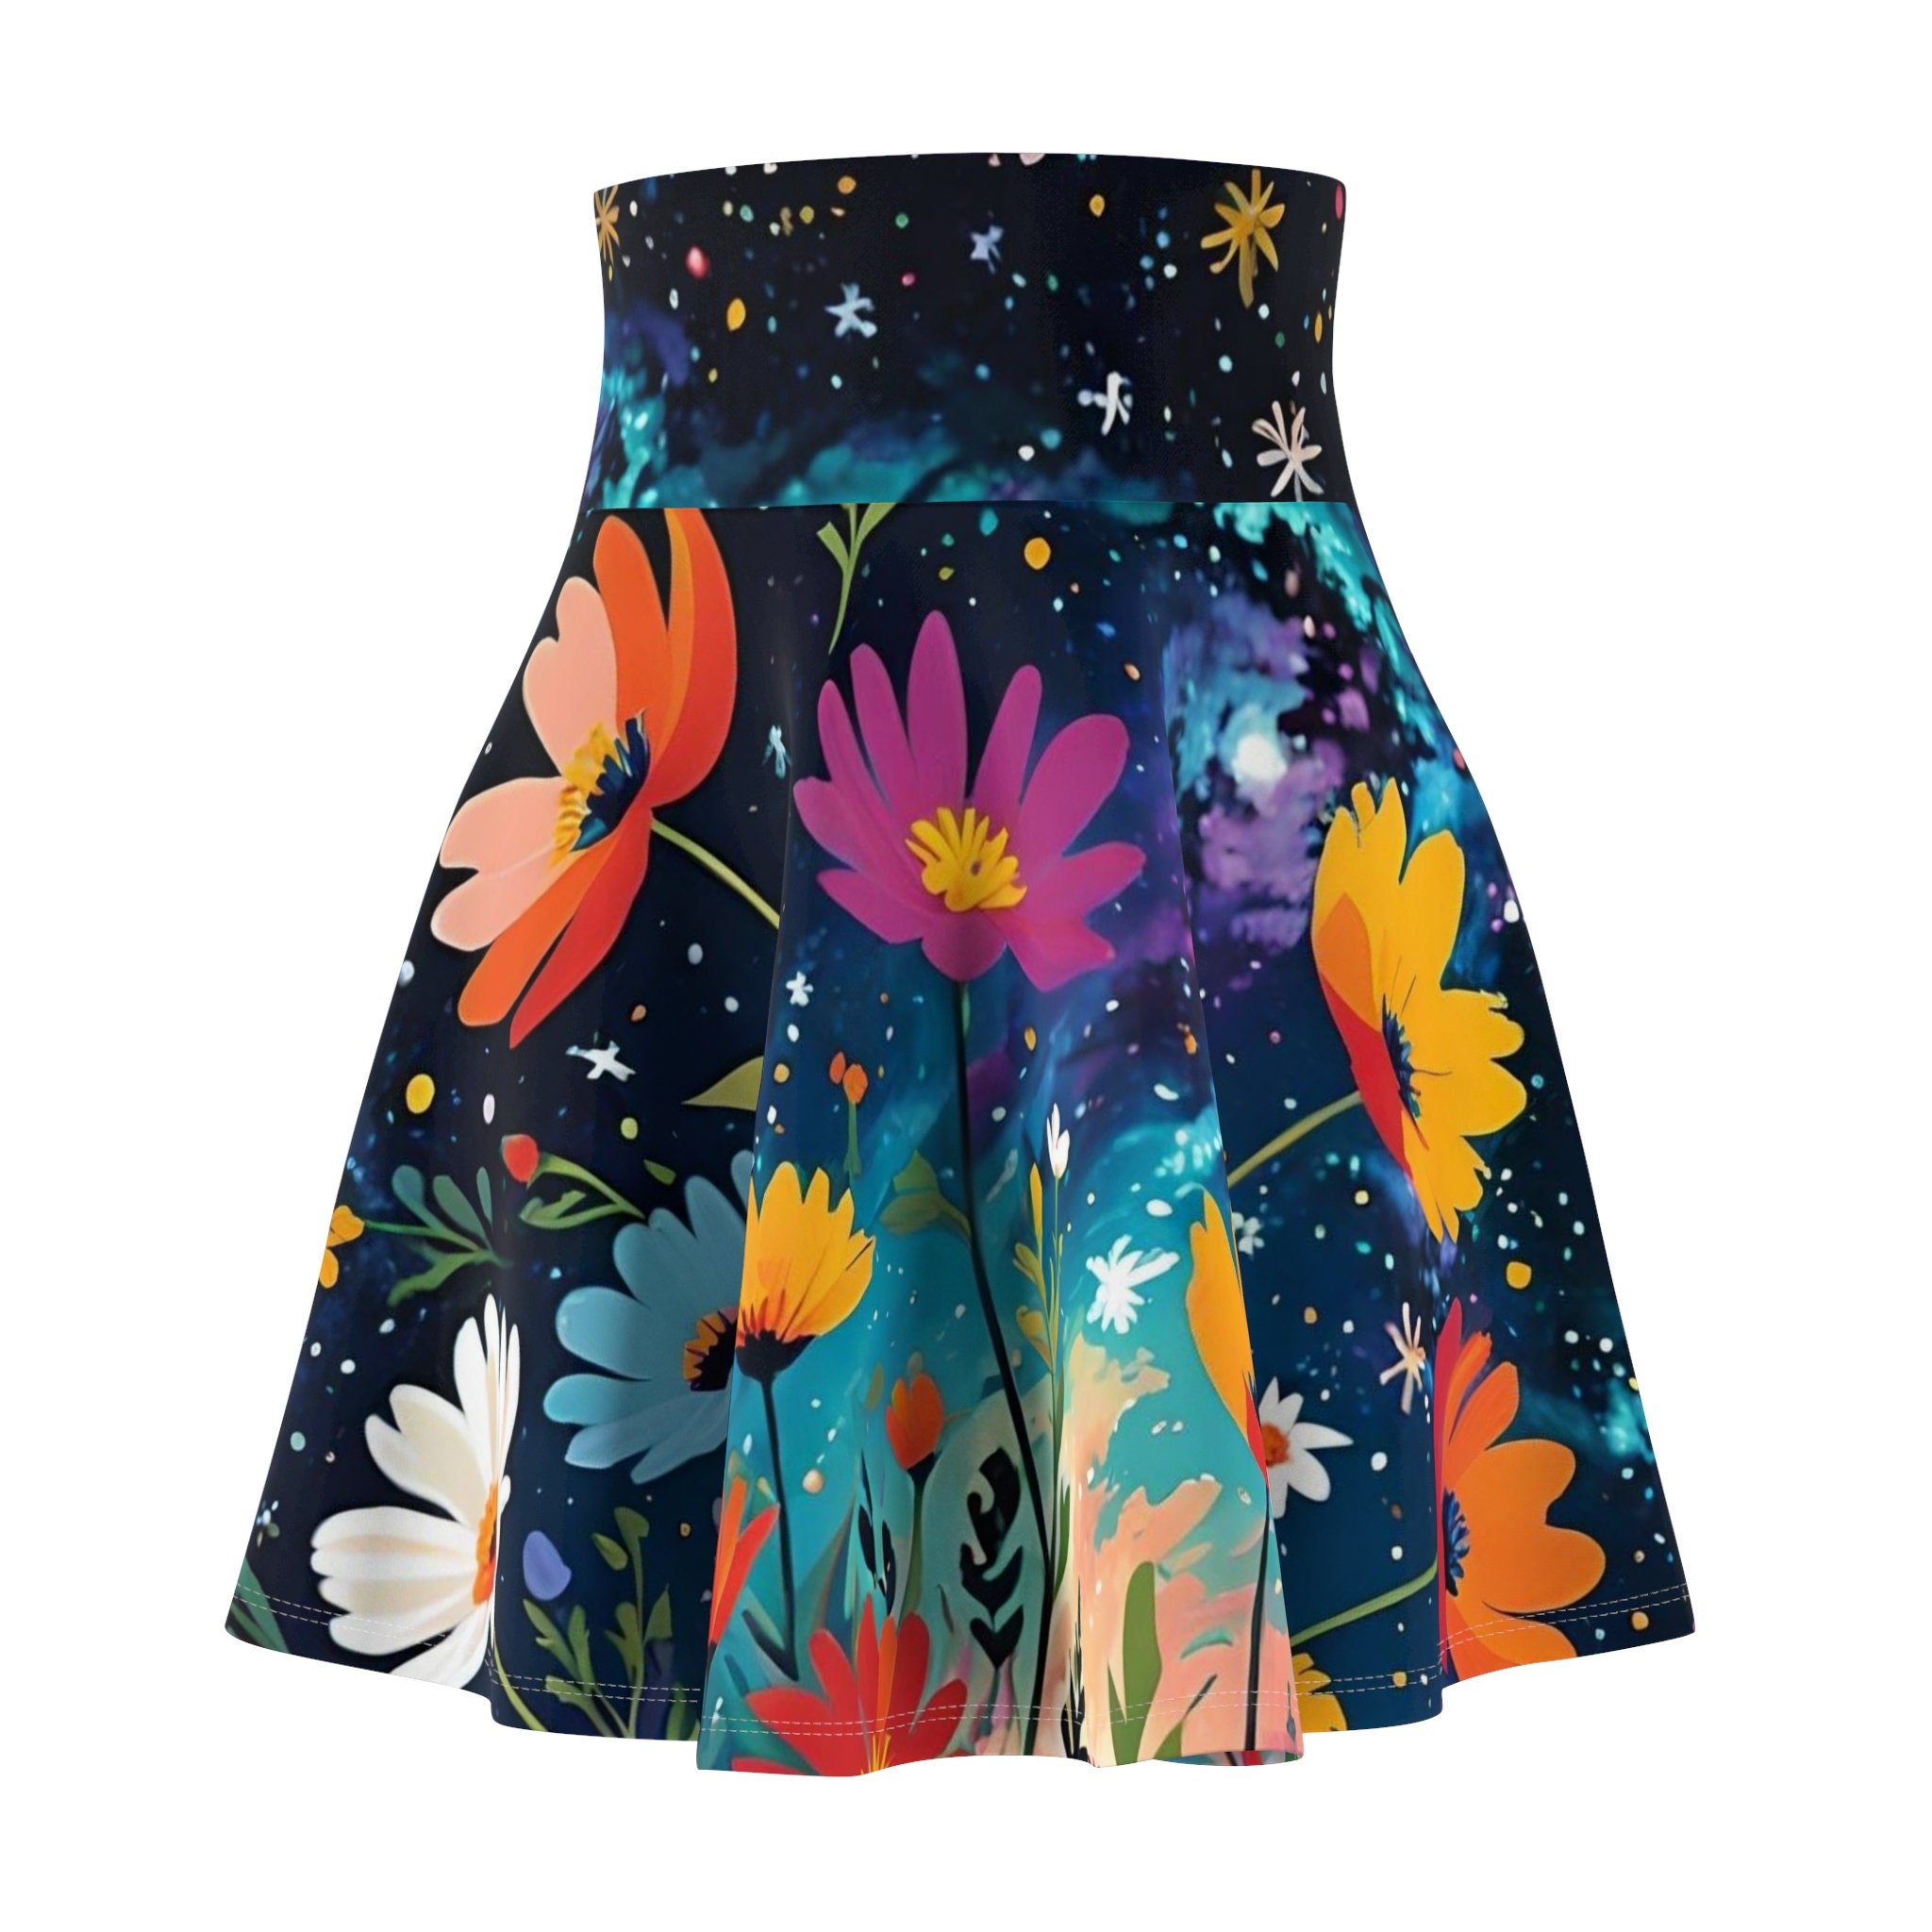 Galaxy Floral Skater Skirt, Women's Skater Skirt